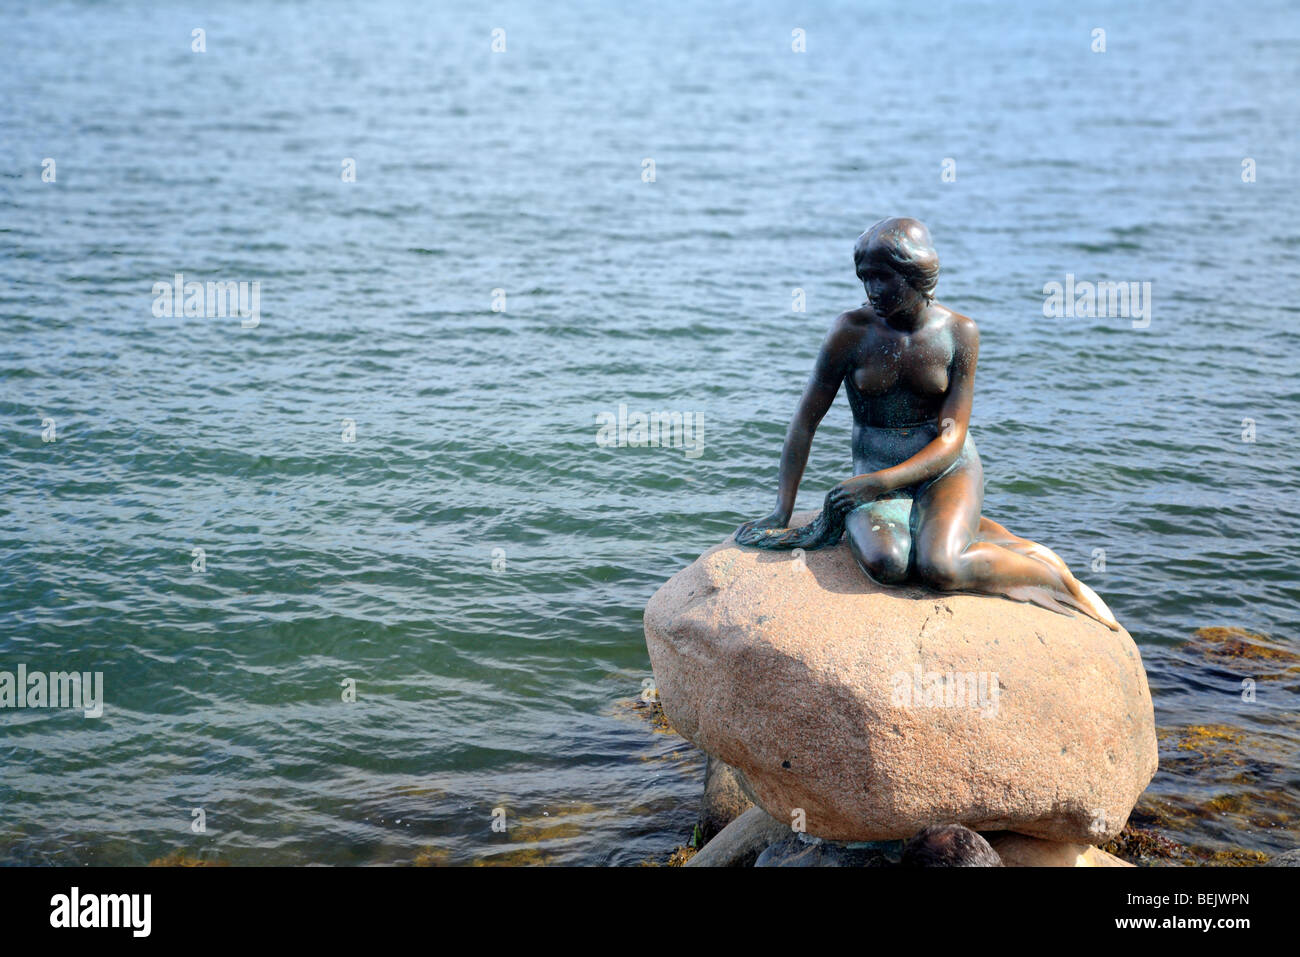 The Little Mermaid statue by sculptor Edvard Eriksen at Langelinie quay, Copenhagen, Denmark Stock Photo